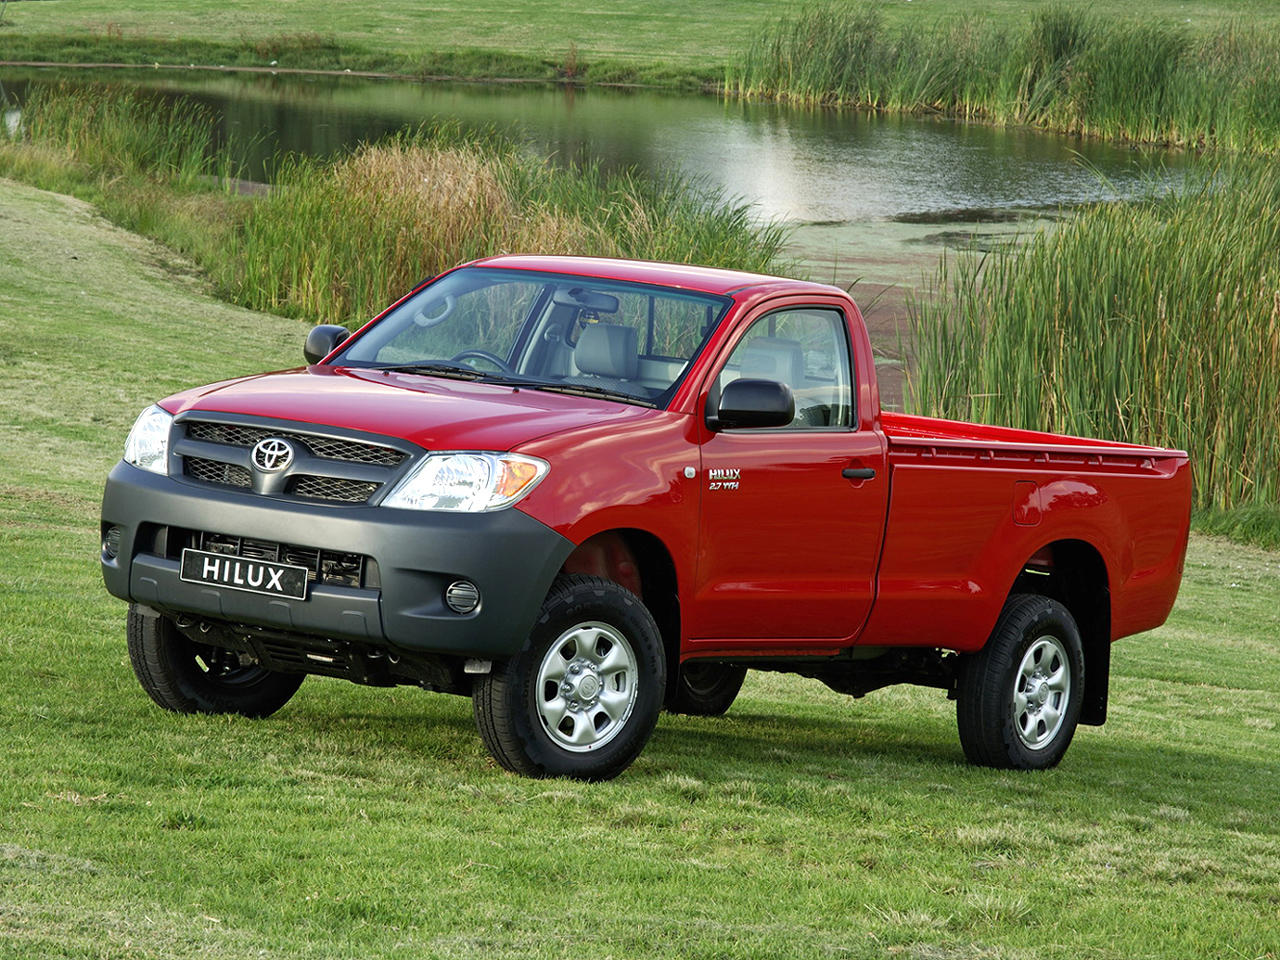 Купить пикап в перми. Toyota Hilux Pickup 2005. Toyota Hilux Regular Cab. Тойота Хайлюкс 3 поколения. Тойота Хайлюкс 2005 Single Cab.